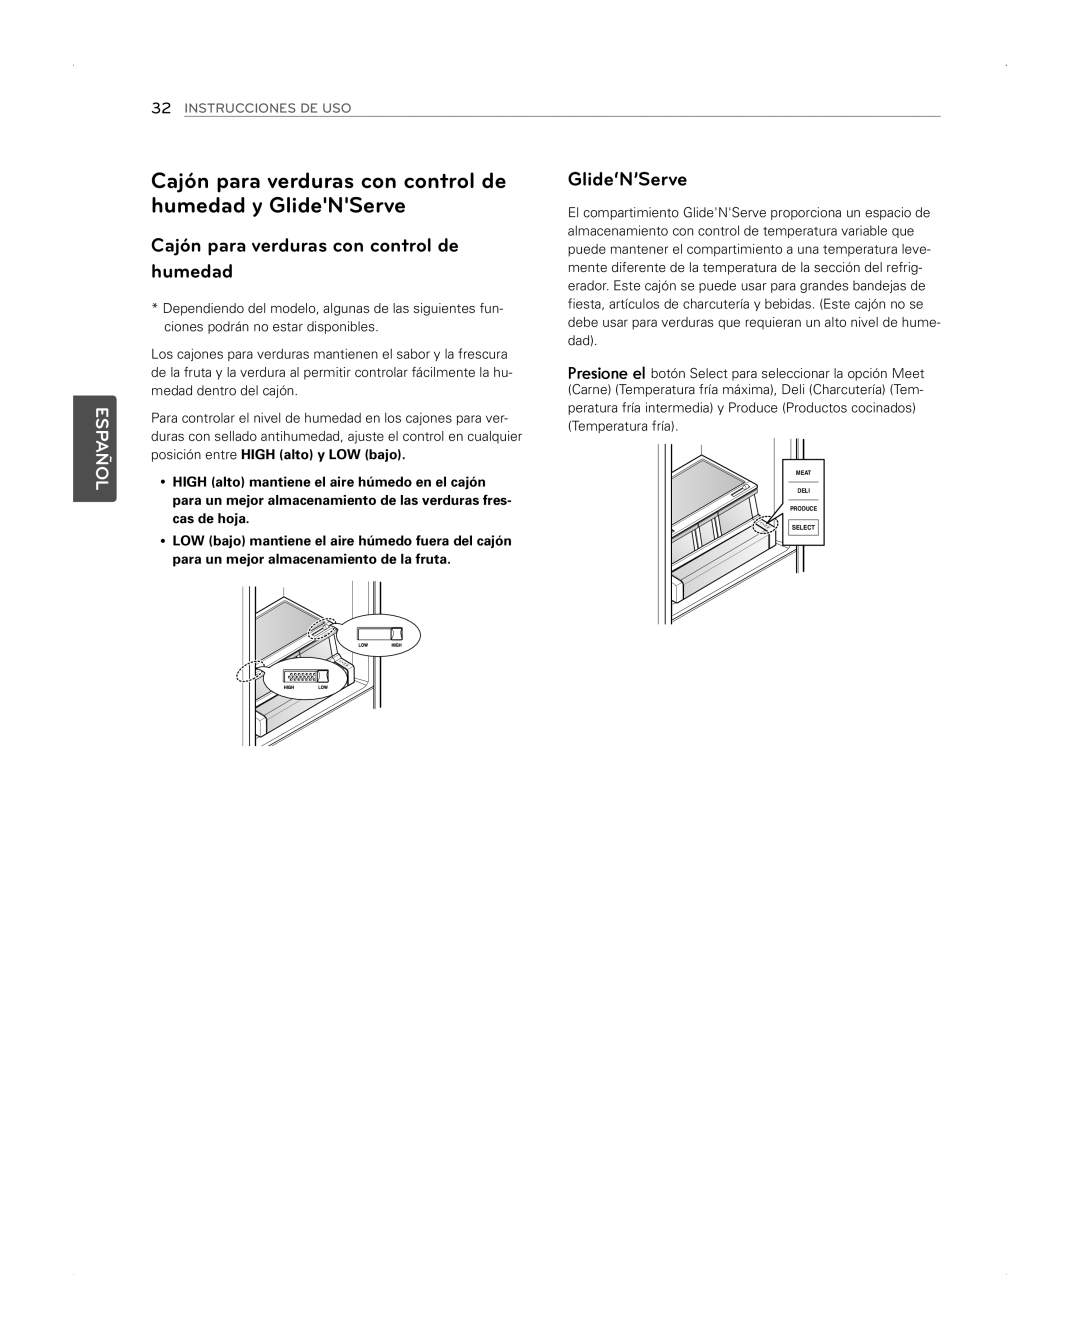 LG Electronics LFX31945ST owner manual Cajón para verduras con control de humedad y GlideNServe, Glide‘N’Serve, Español 